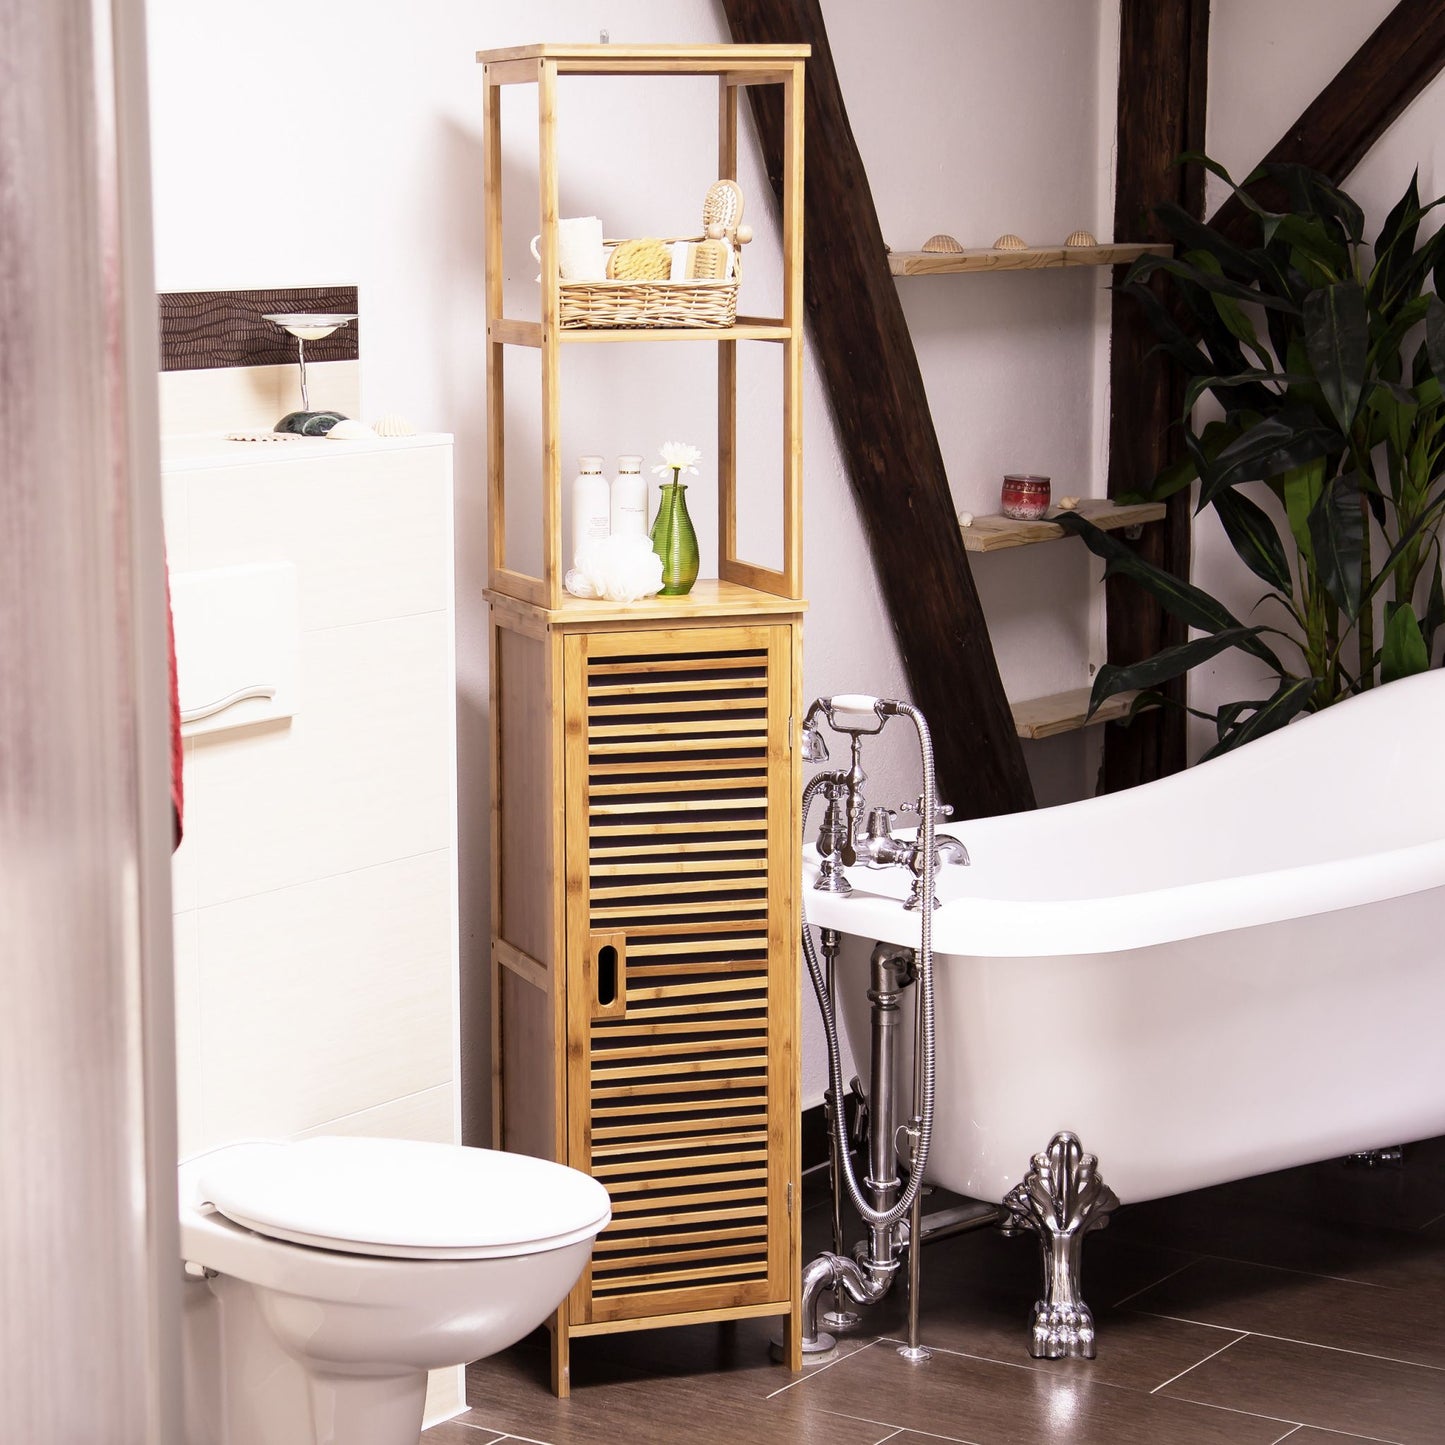 RelaxDays 5-Tier Bamboo Bathroom Rack Bamboo Bathrooms